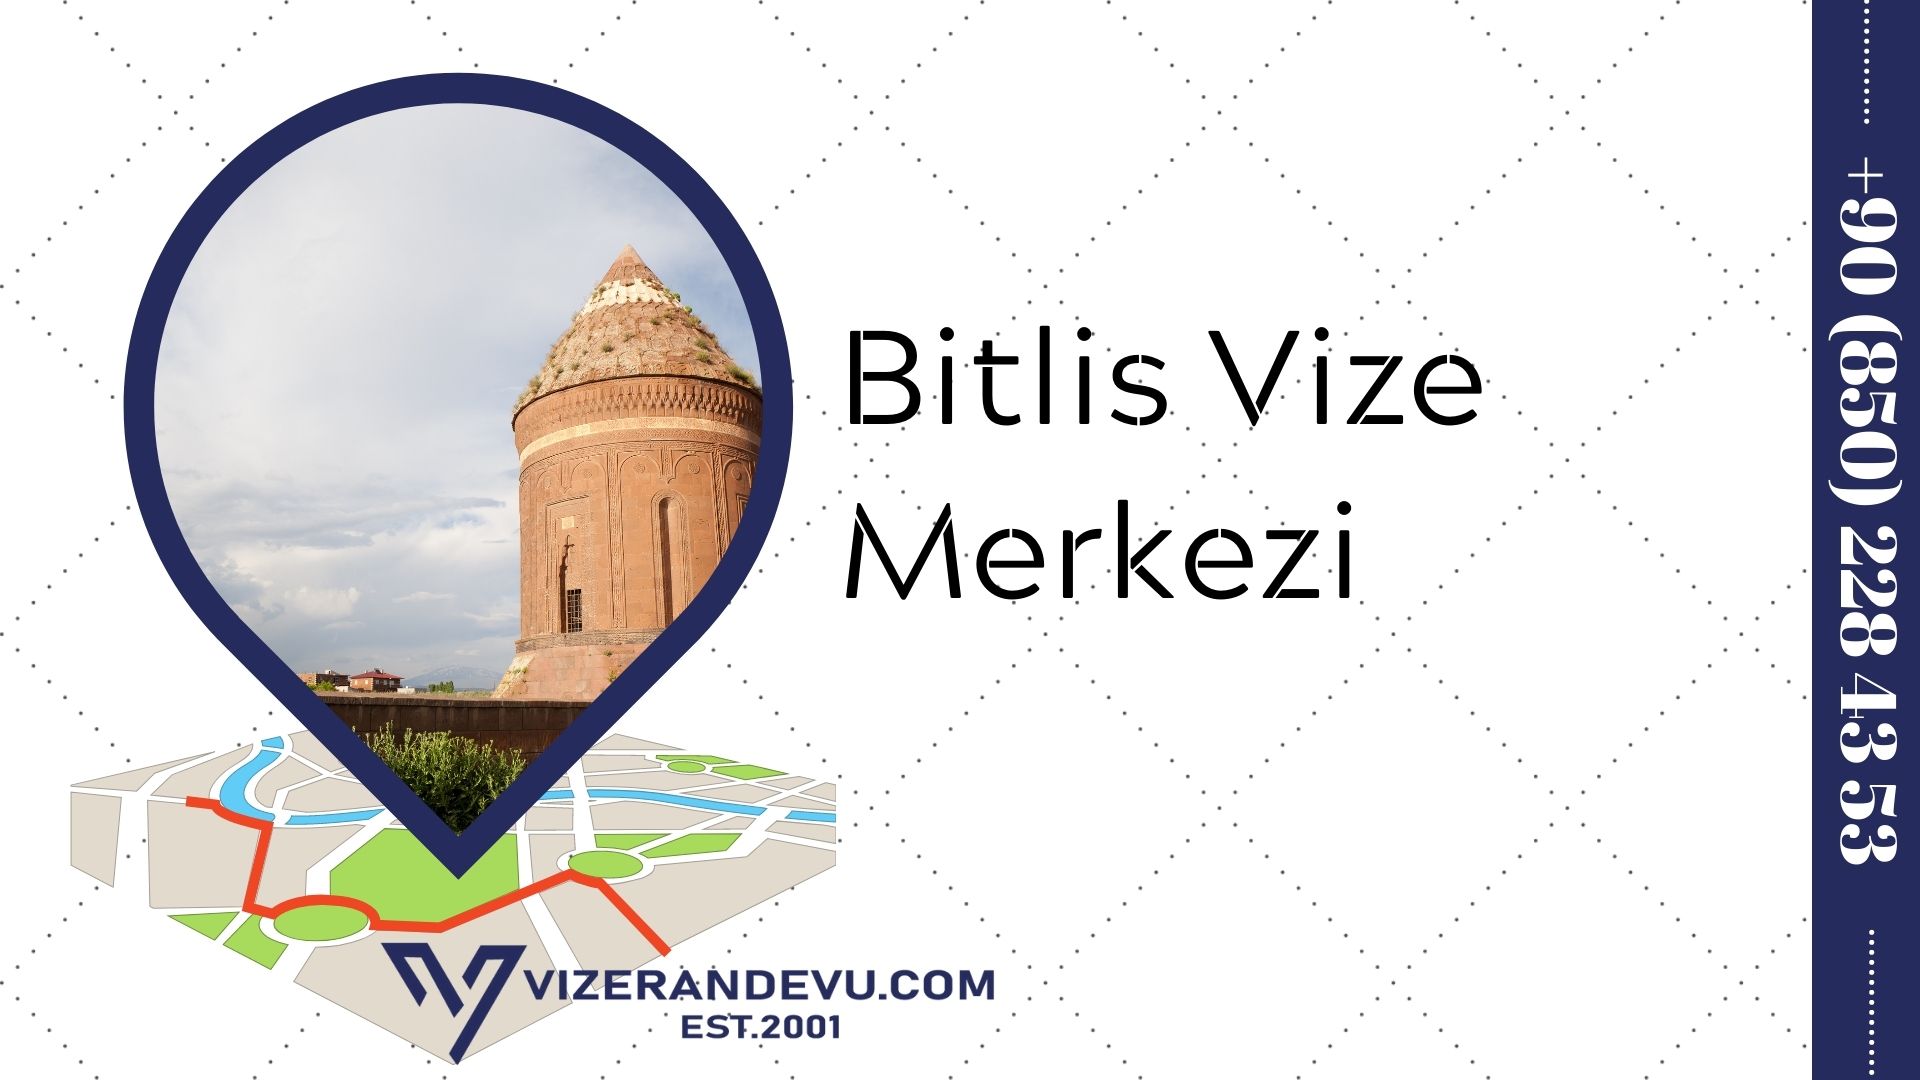 Bitlis Vize Merkezi